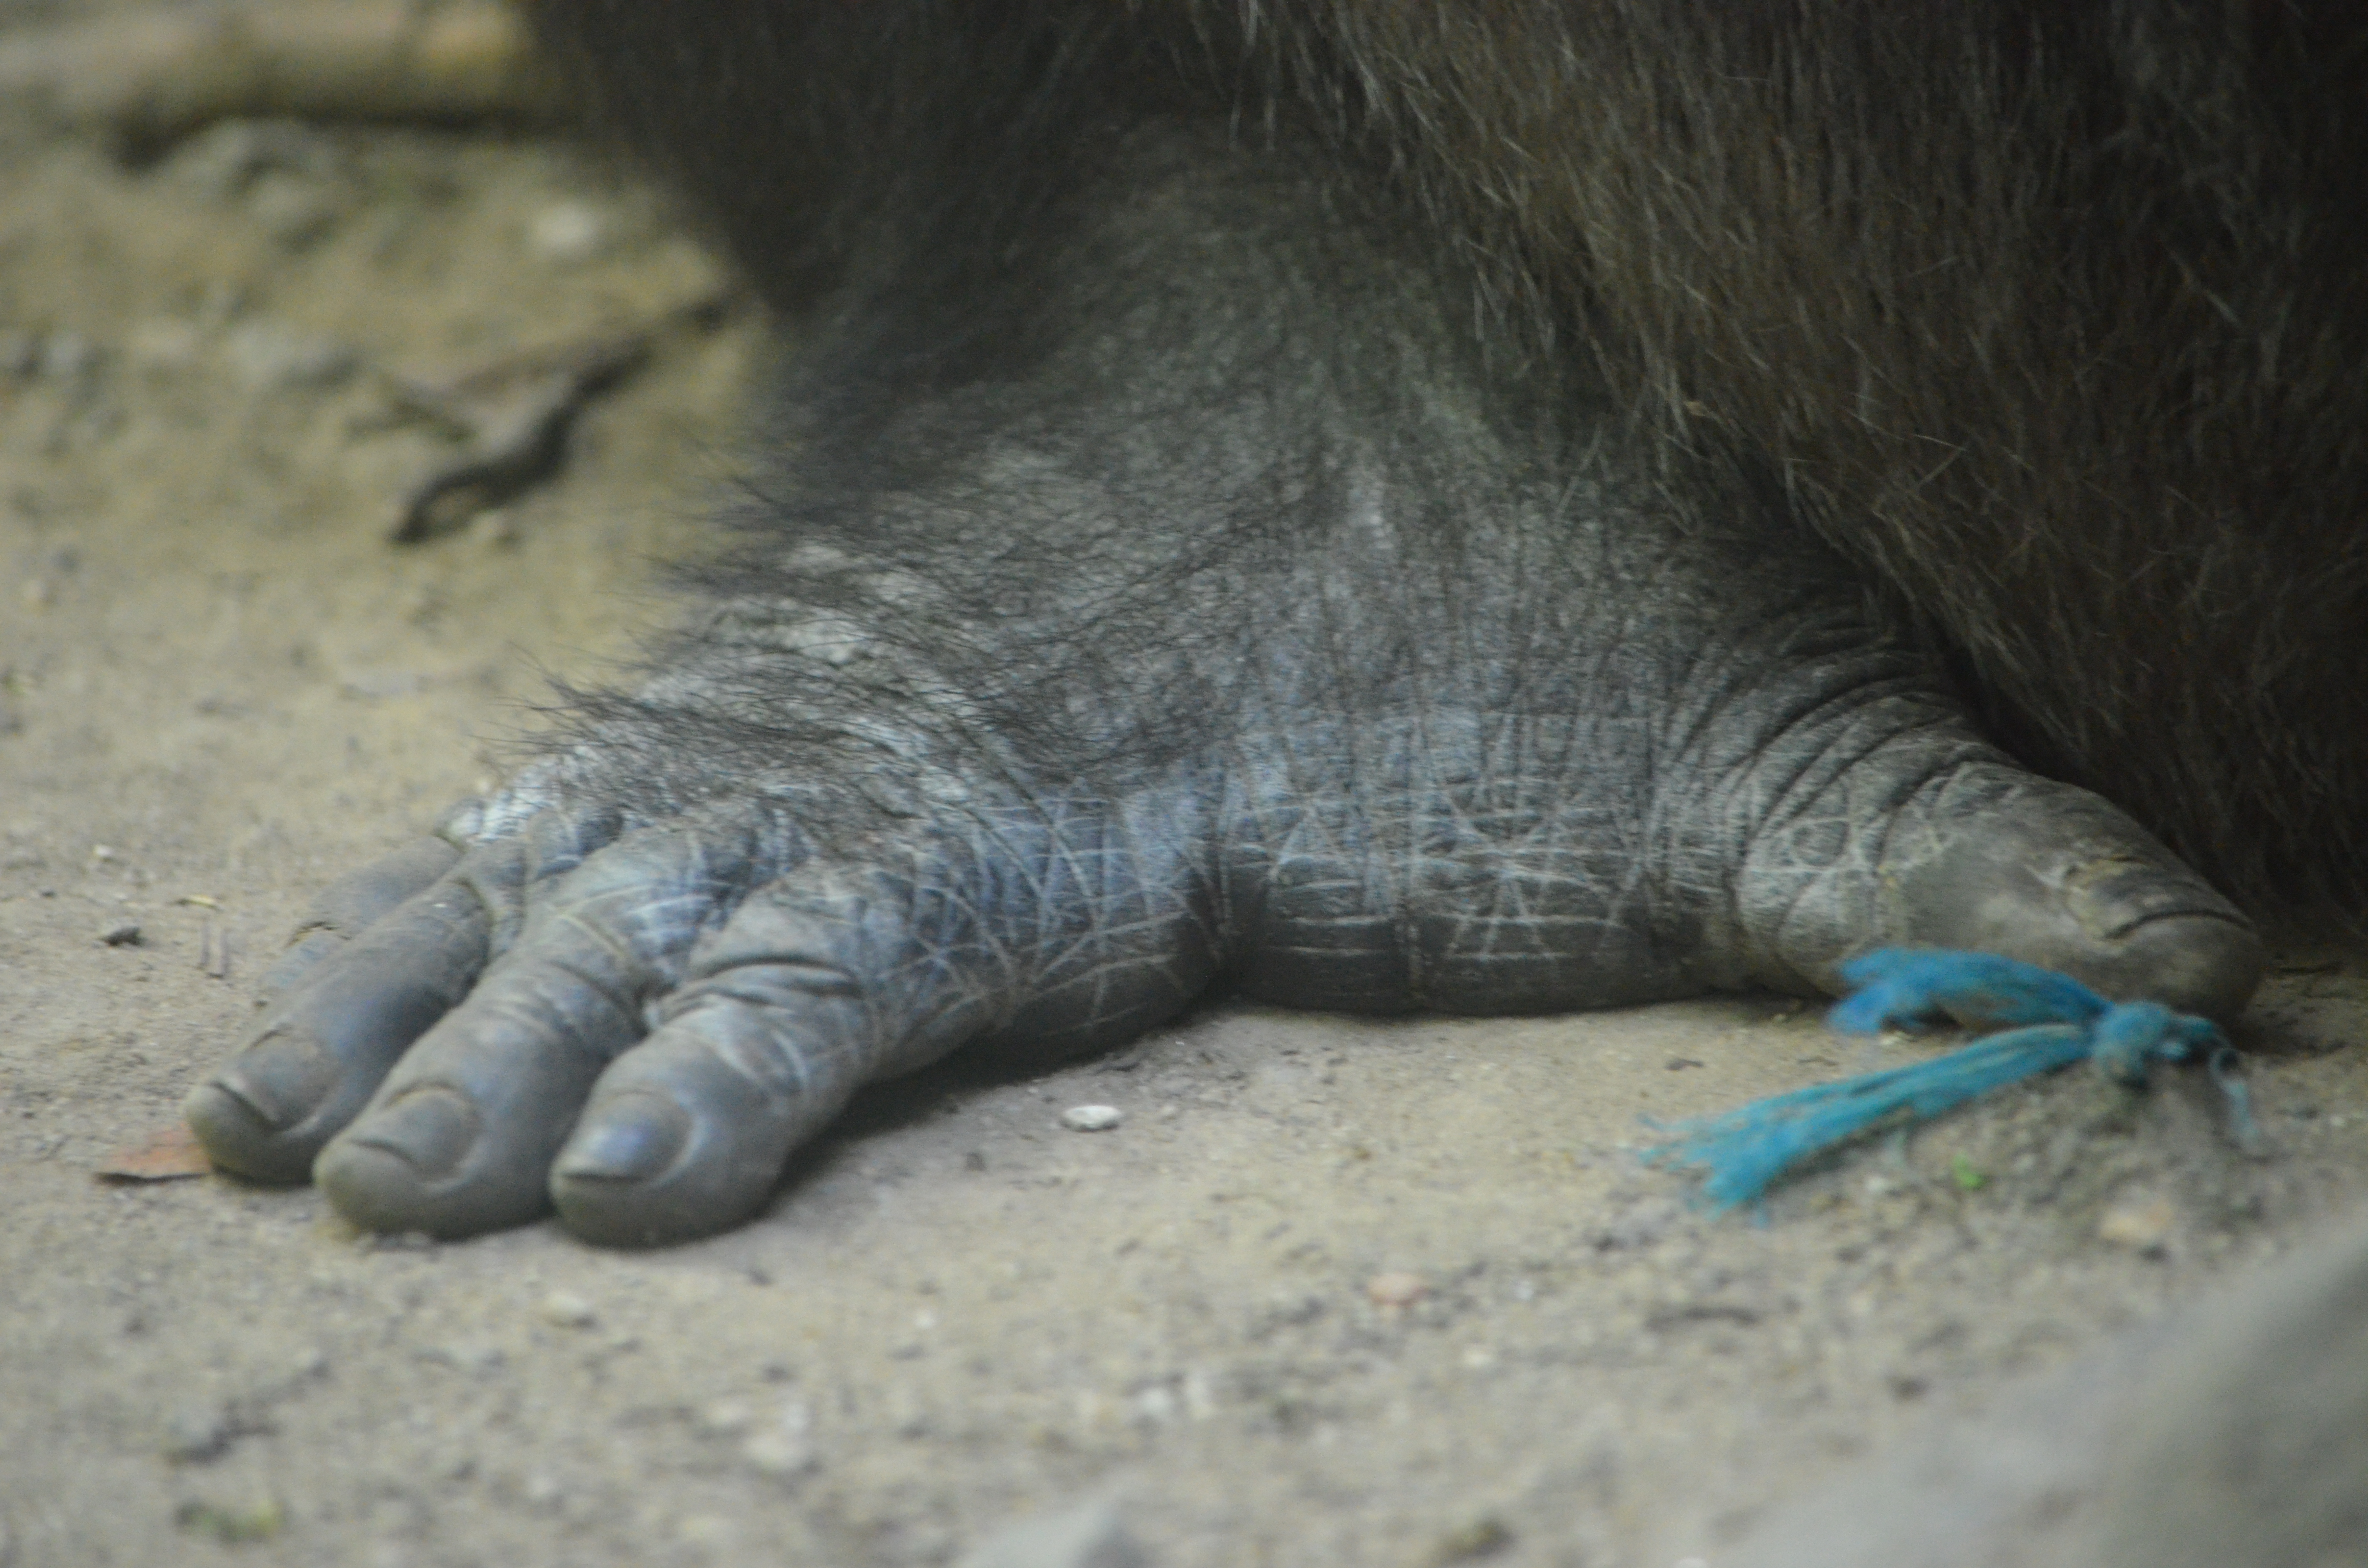 Gorilla foot